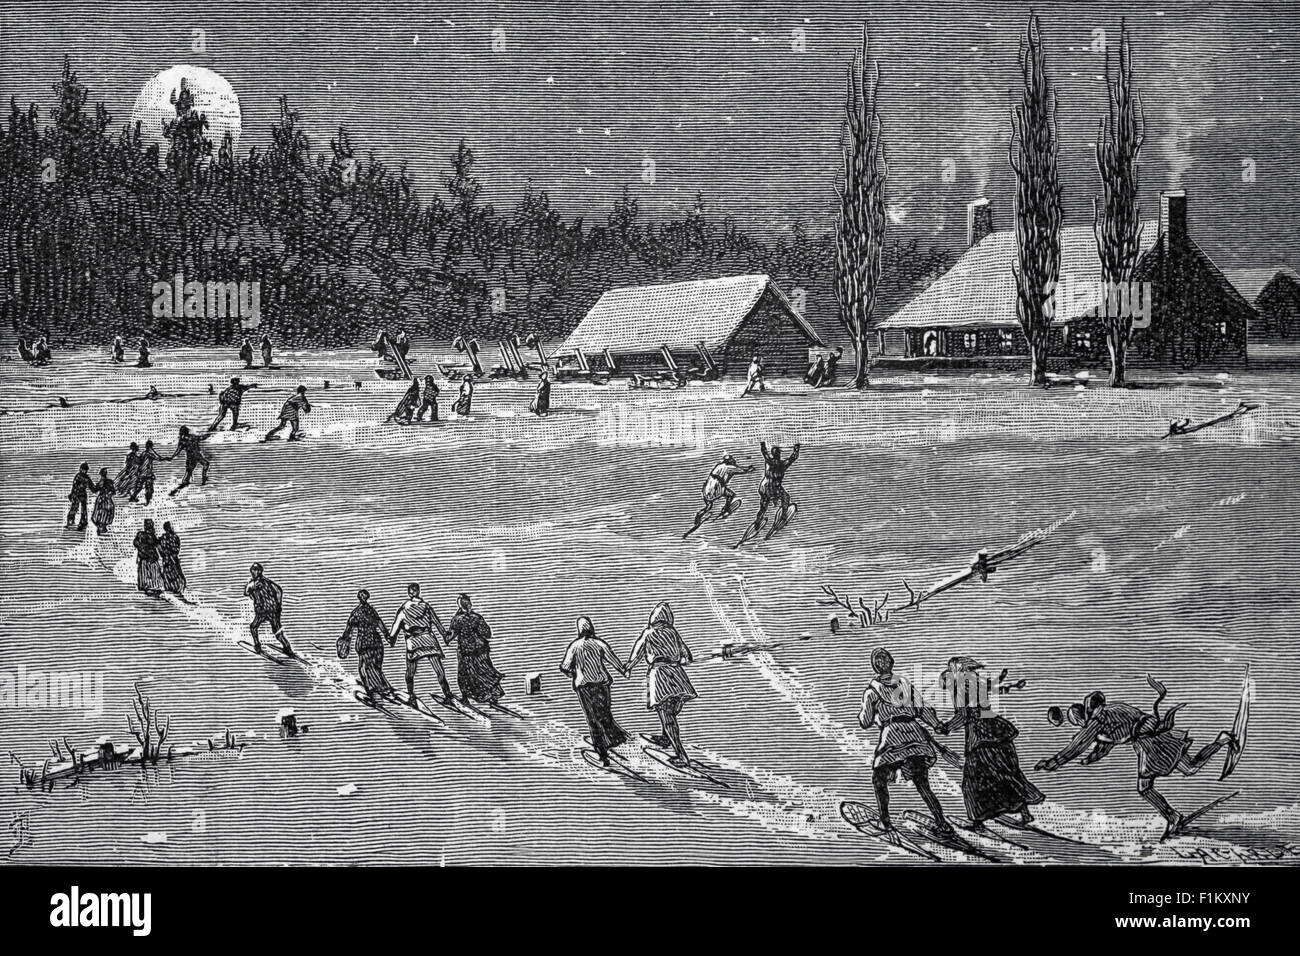 Eine Illustration aus dem 19. Jahrhundert, in der nordkanadische Dorfbewohner in einer mondbeleuchteten Winternacht Schneeschuhe und Himmel verwenden. Traditionelle Schneeschuhe wurden mit einem Hartholzrahmen mit Rawhide-Schnüren hergestellt. Stockfoto